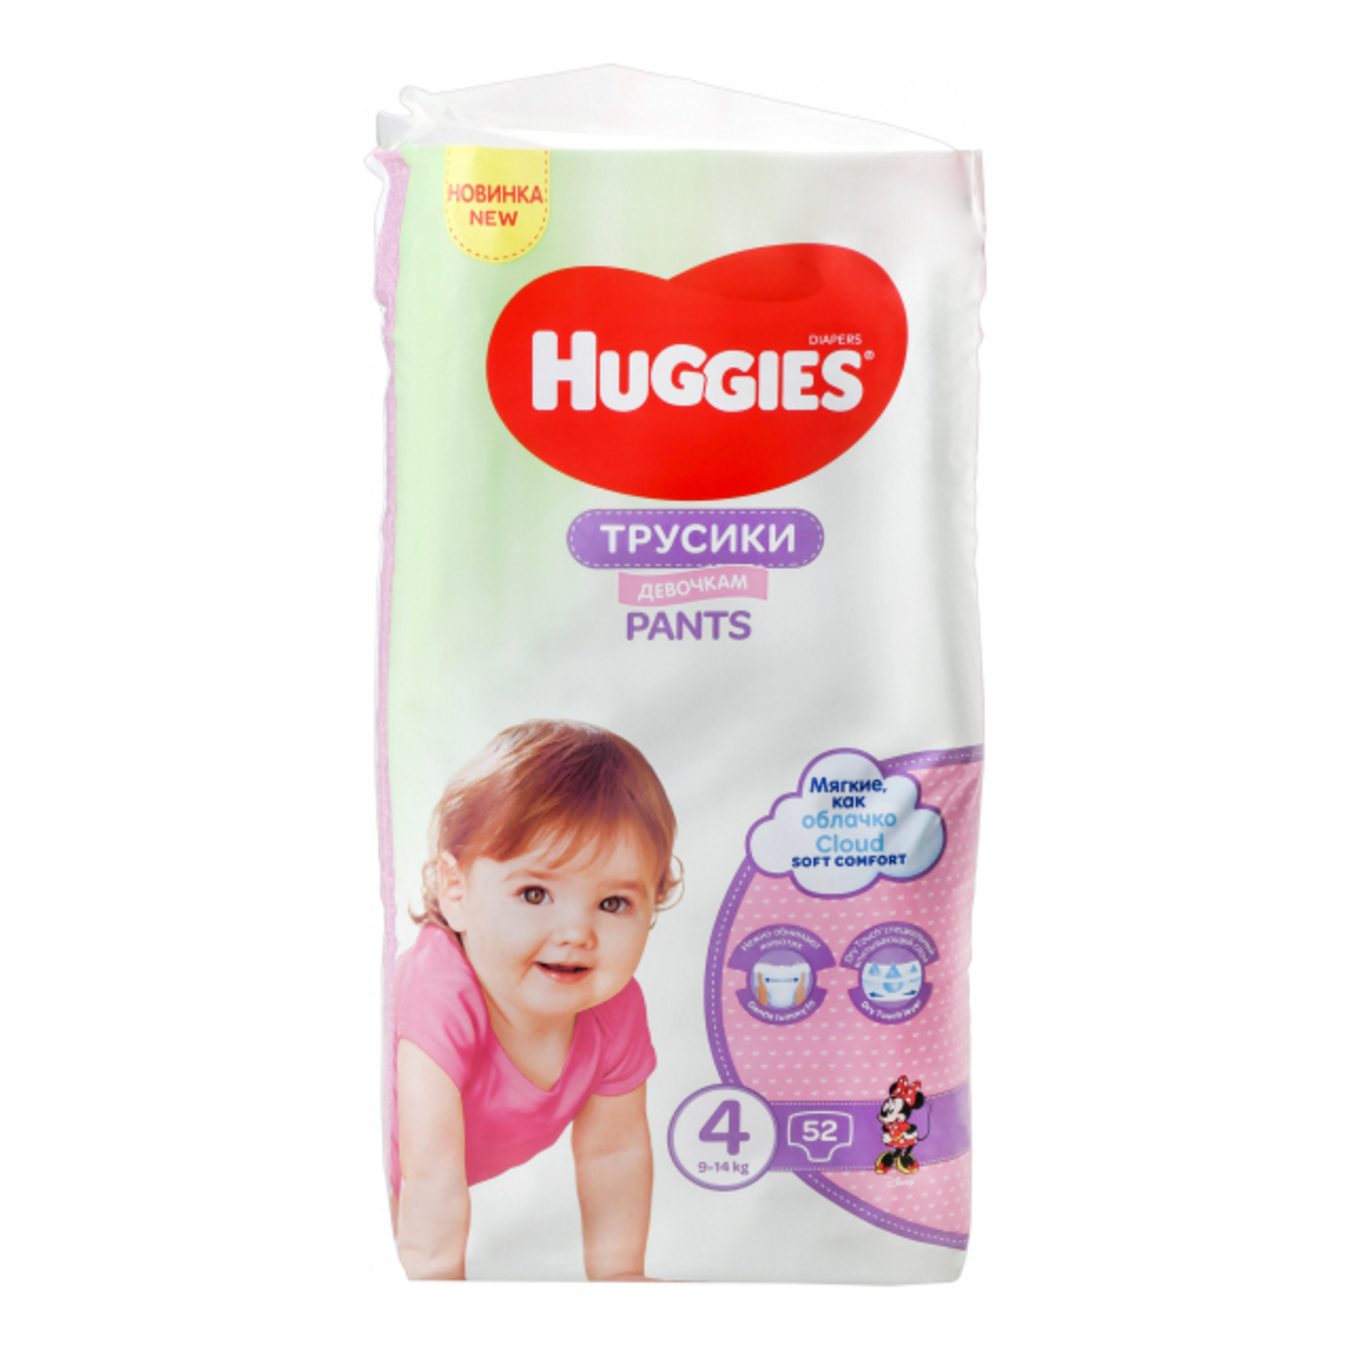 Подгузники трусики Huggies Pants 4 для девочек 52шт